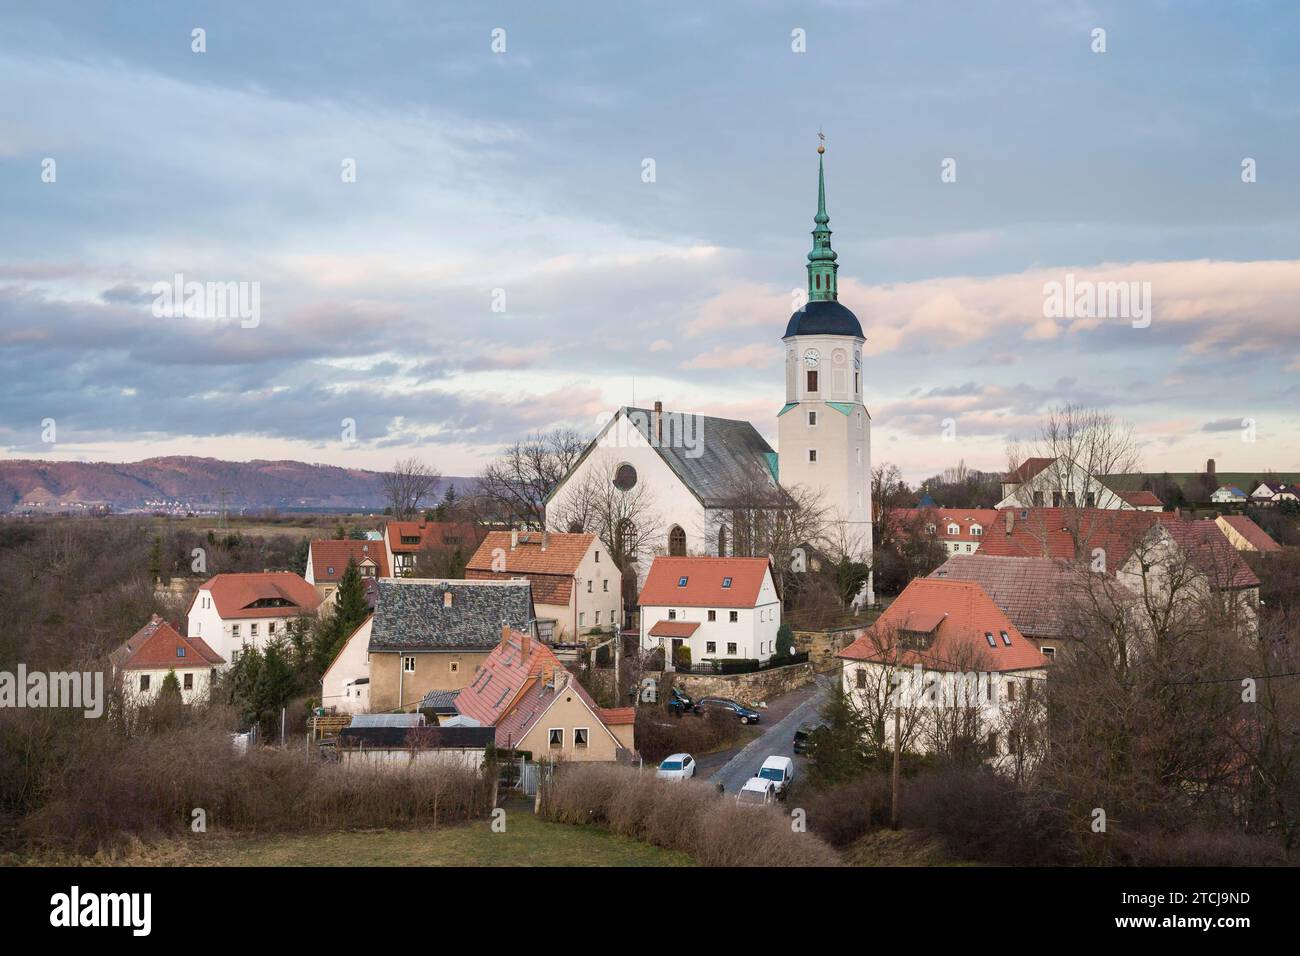 Dohna est la deuxième ville la plus ancienne de l'État libre de Saxe. Il est situé dans le quartier de Saechsische Schweiz-Osterzgebirge. Dohna est gothique tardif Banque D'Images